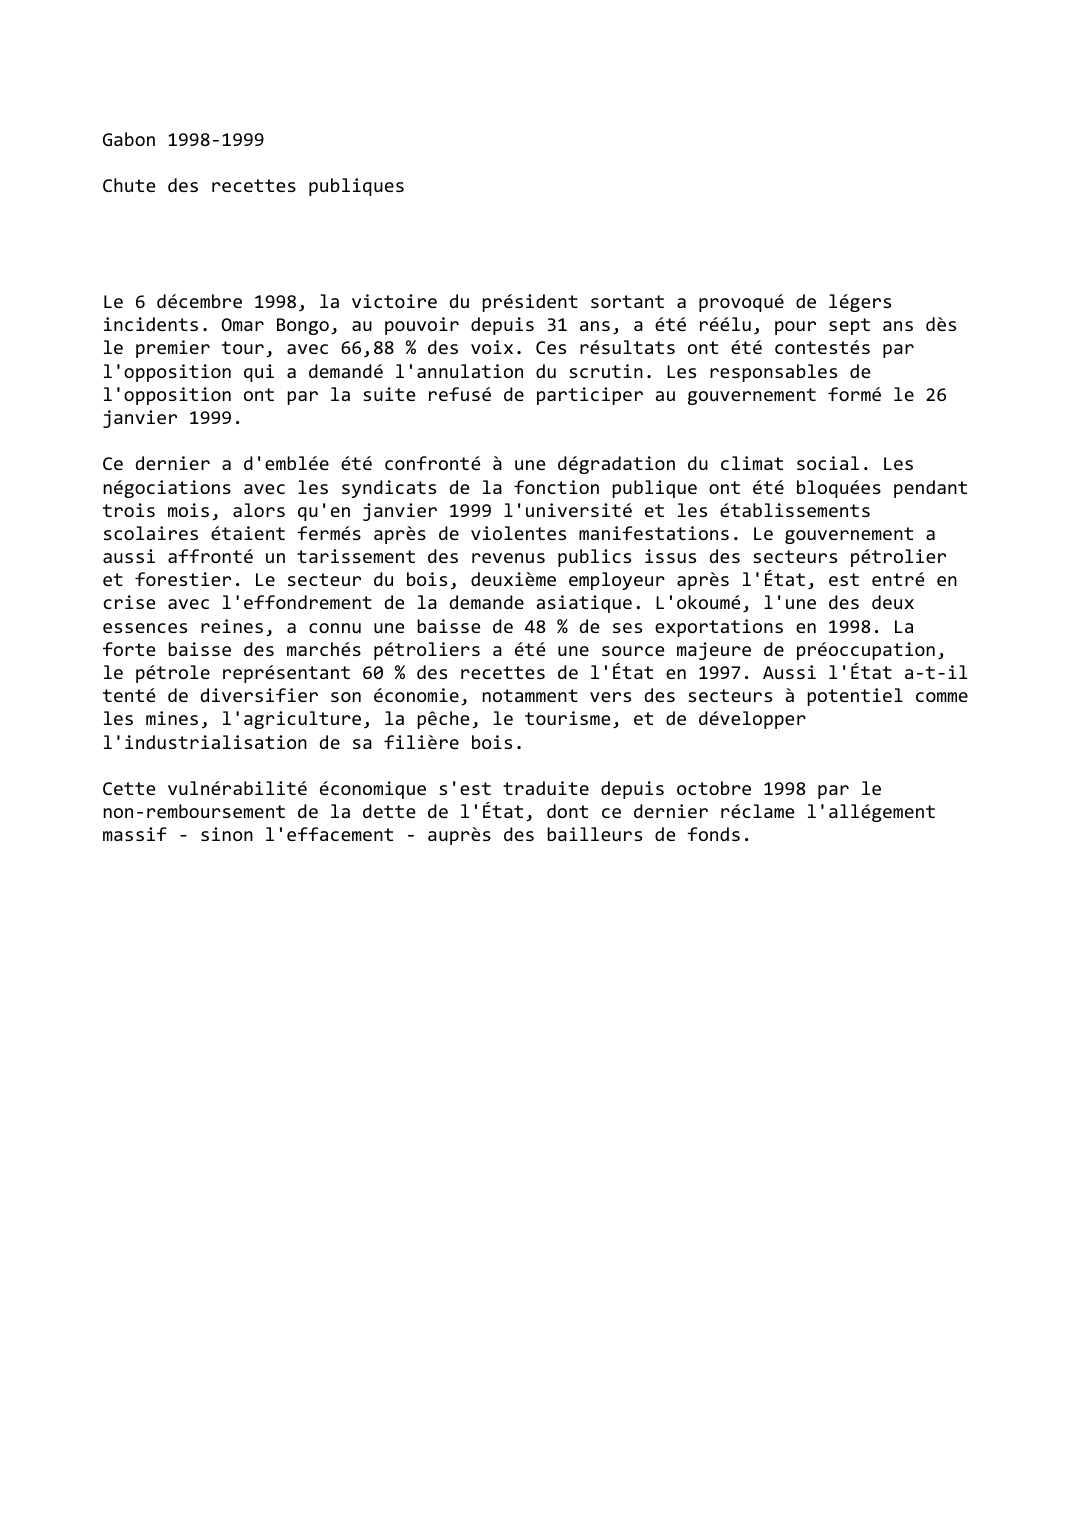 Prévisualisation du document Gabon (1998-1999): Chute des recettes publiques